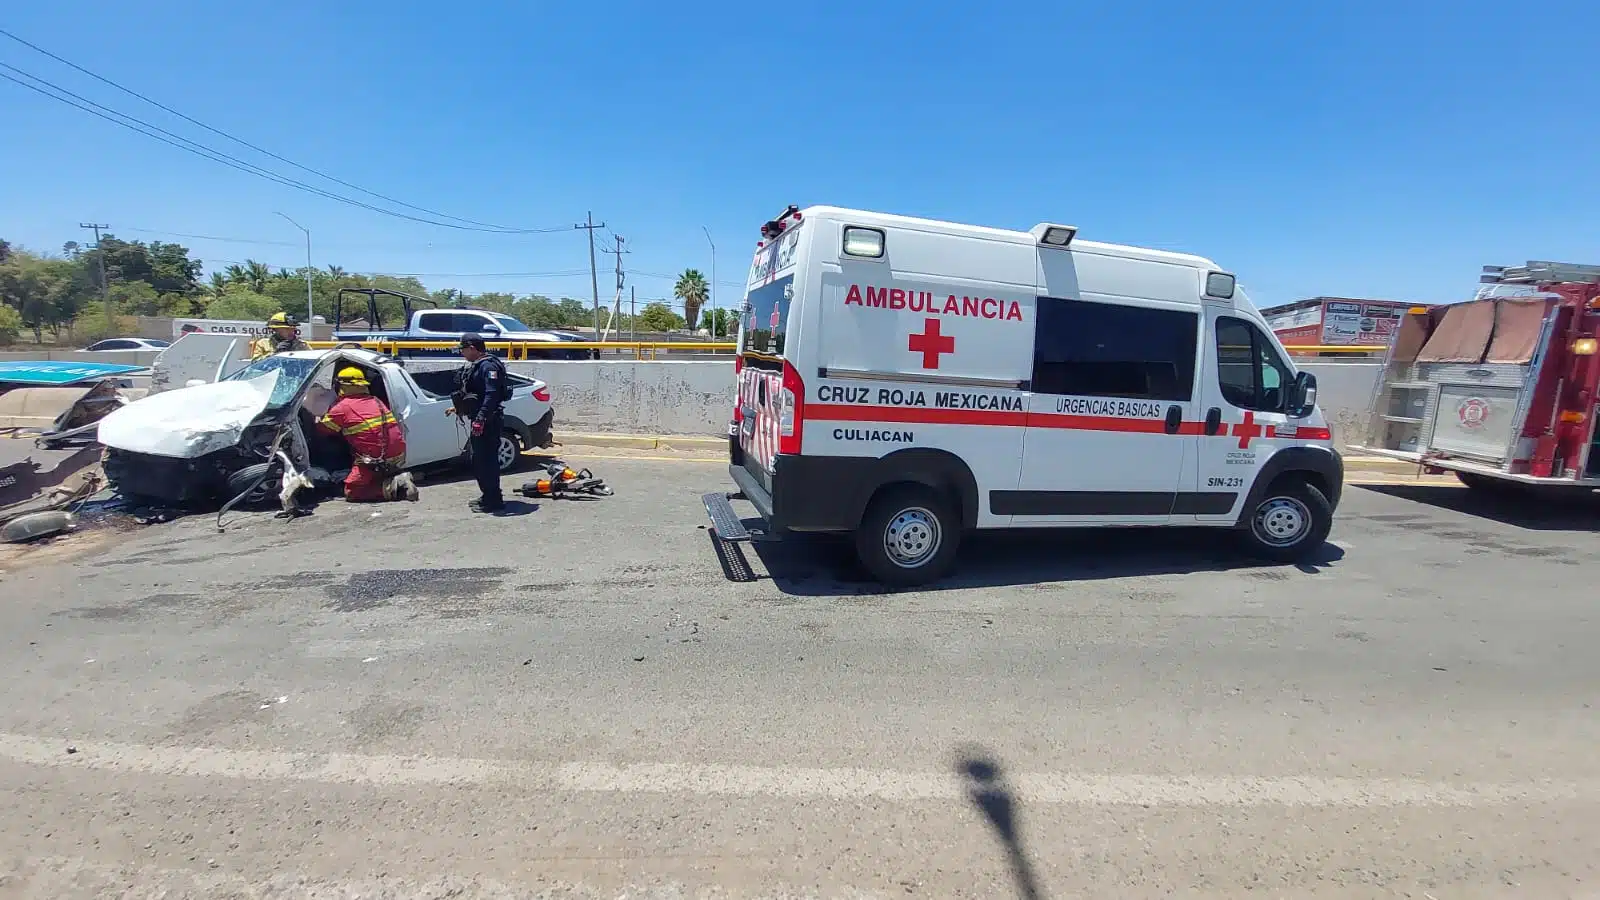 Camioneta destrozada de un lado tras un accidente tipo choque en la que viajaba Ángel y una ambulancia de la Cruz Roja en la carretera sobre el libramiento Benito Juárez "La Costerita" en Culiacán